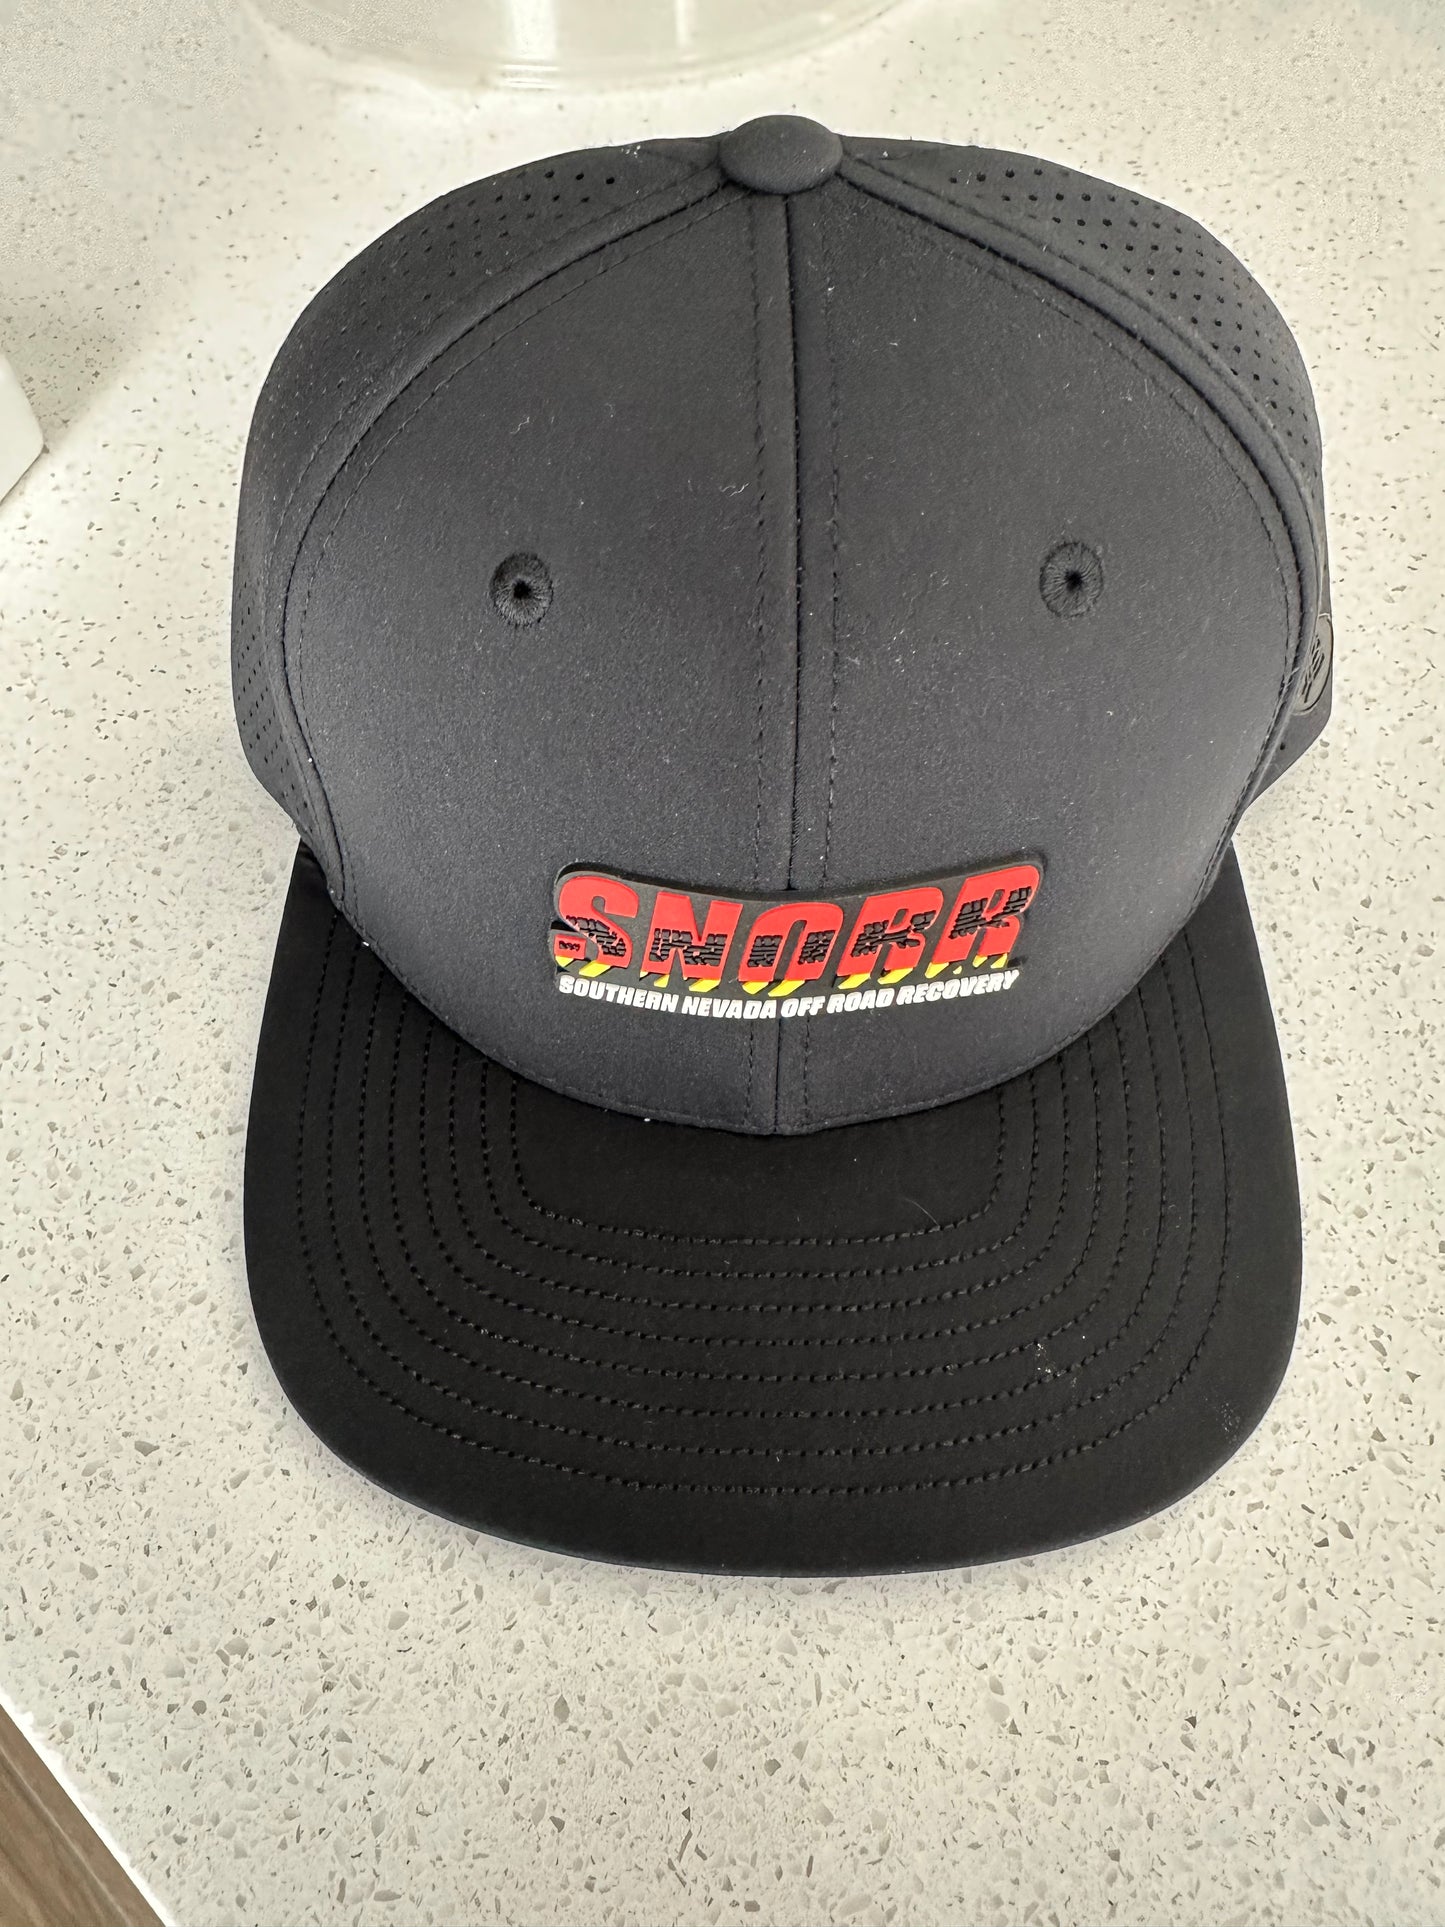 SNORR Logo'd Baseball Hat